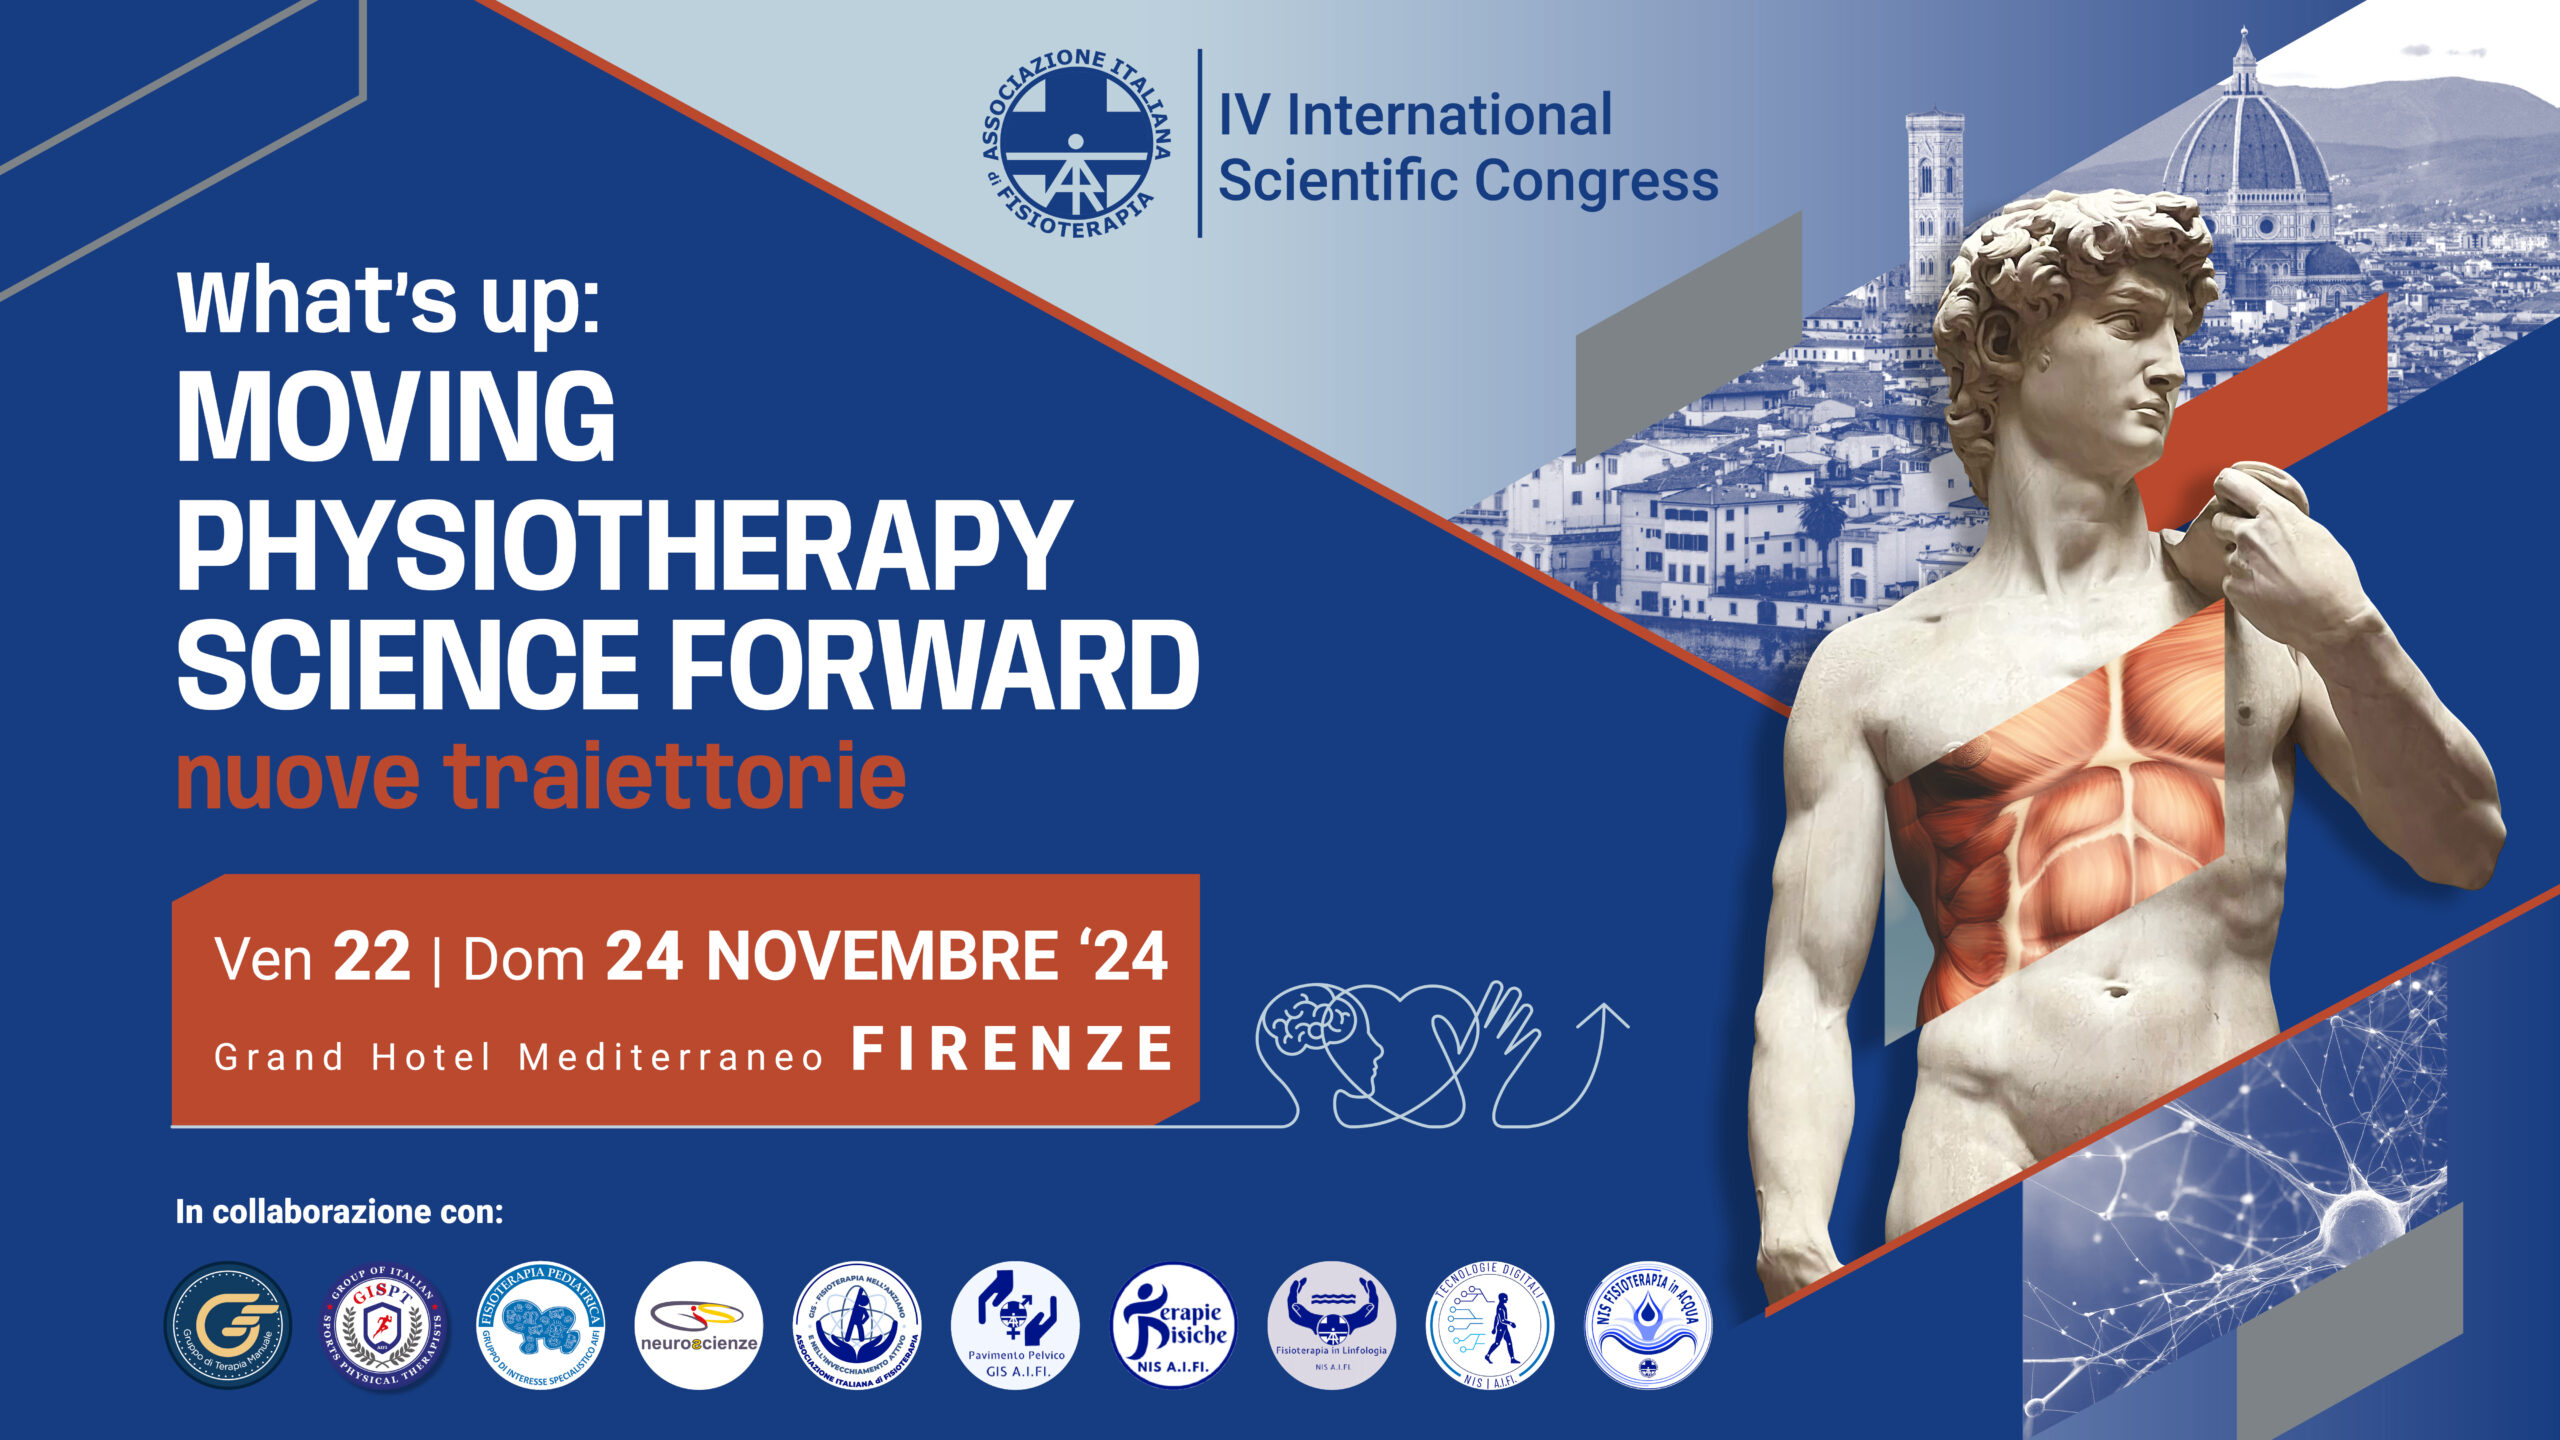 IV° INTERNATIONAL SCIENTIFIC CONGRESS di AIFI – da ven 22 a dom 24 novembre a Firenze! – Save The Date!